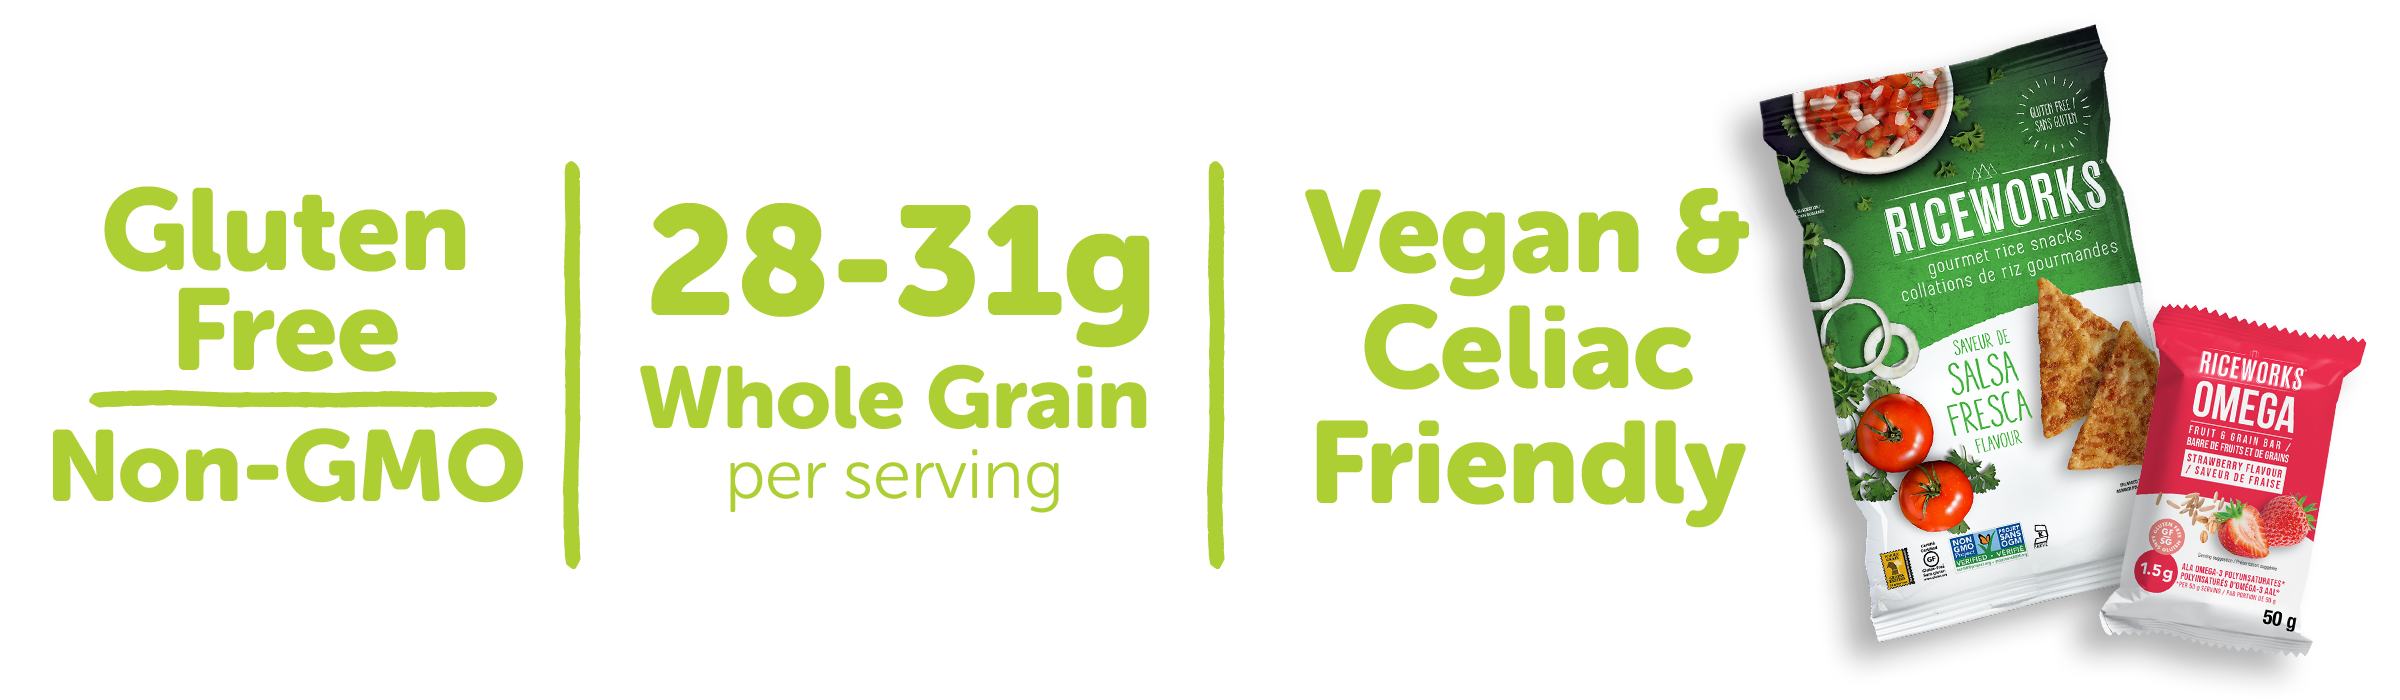 Gluten Free, Non-GMO, 15-19 g Whole Grain per serving, Vegan and Celiac friendly